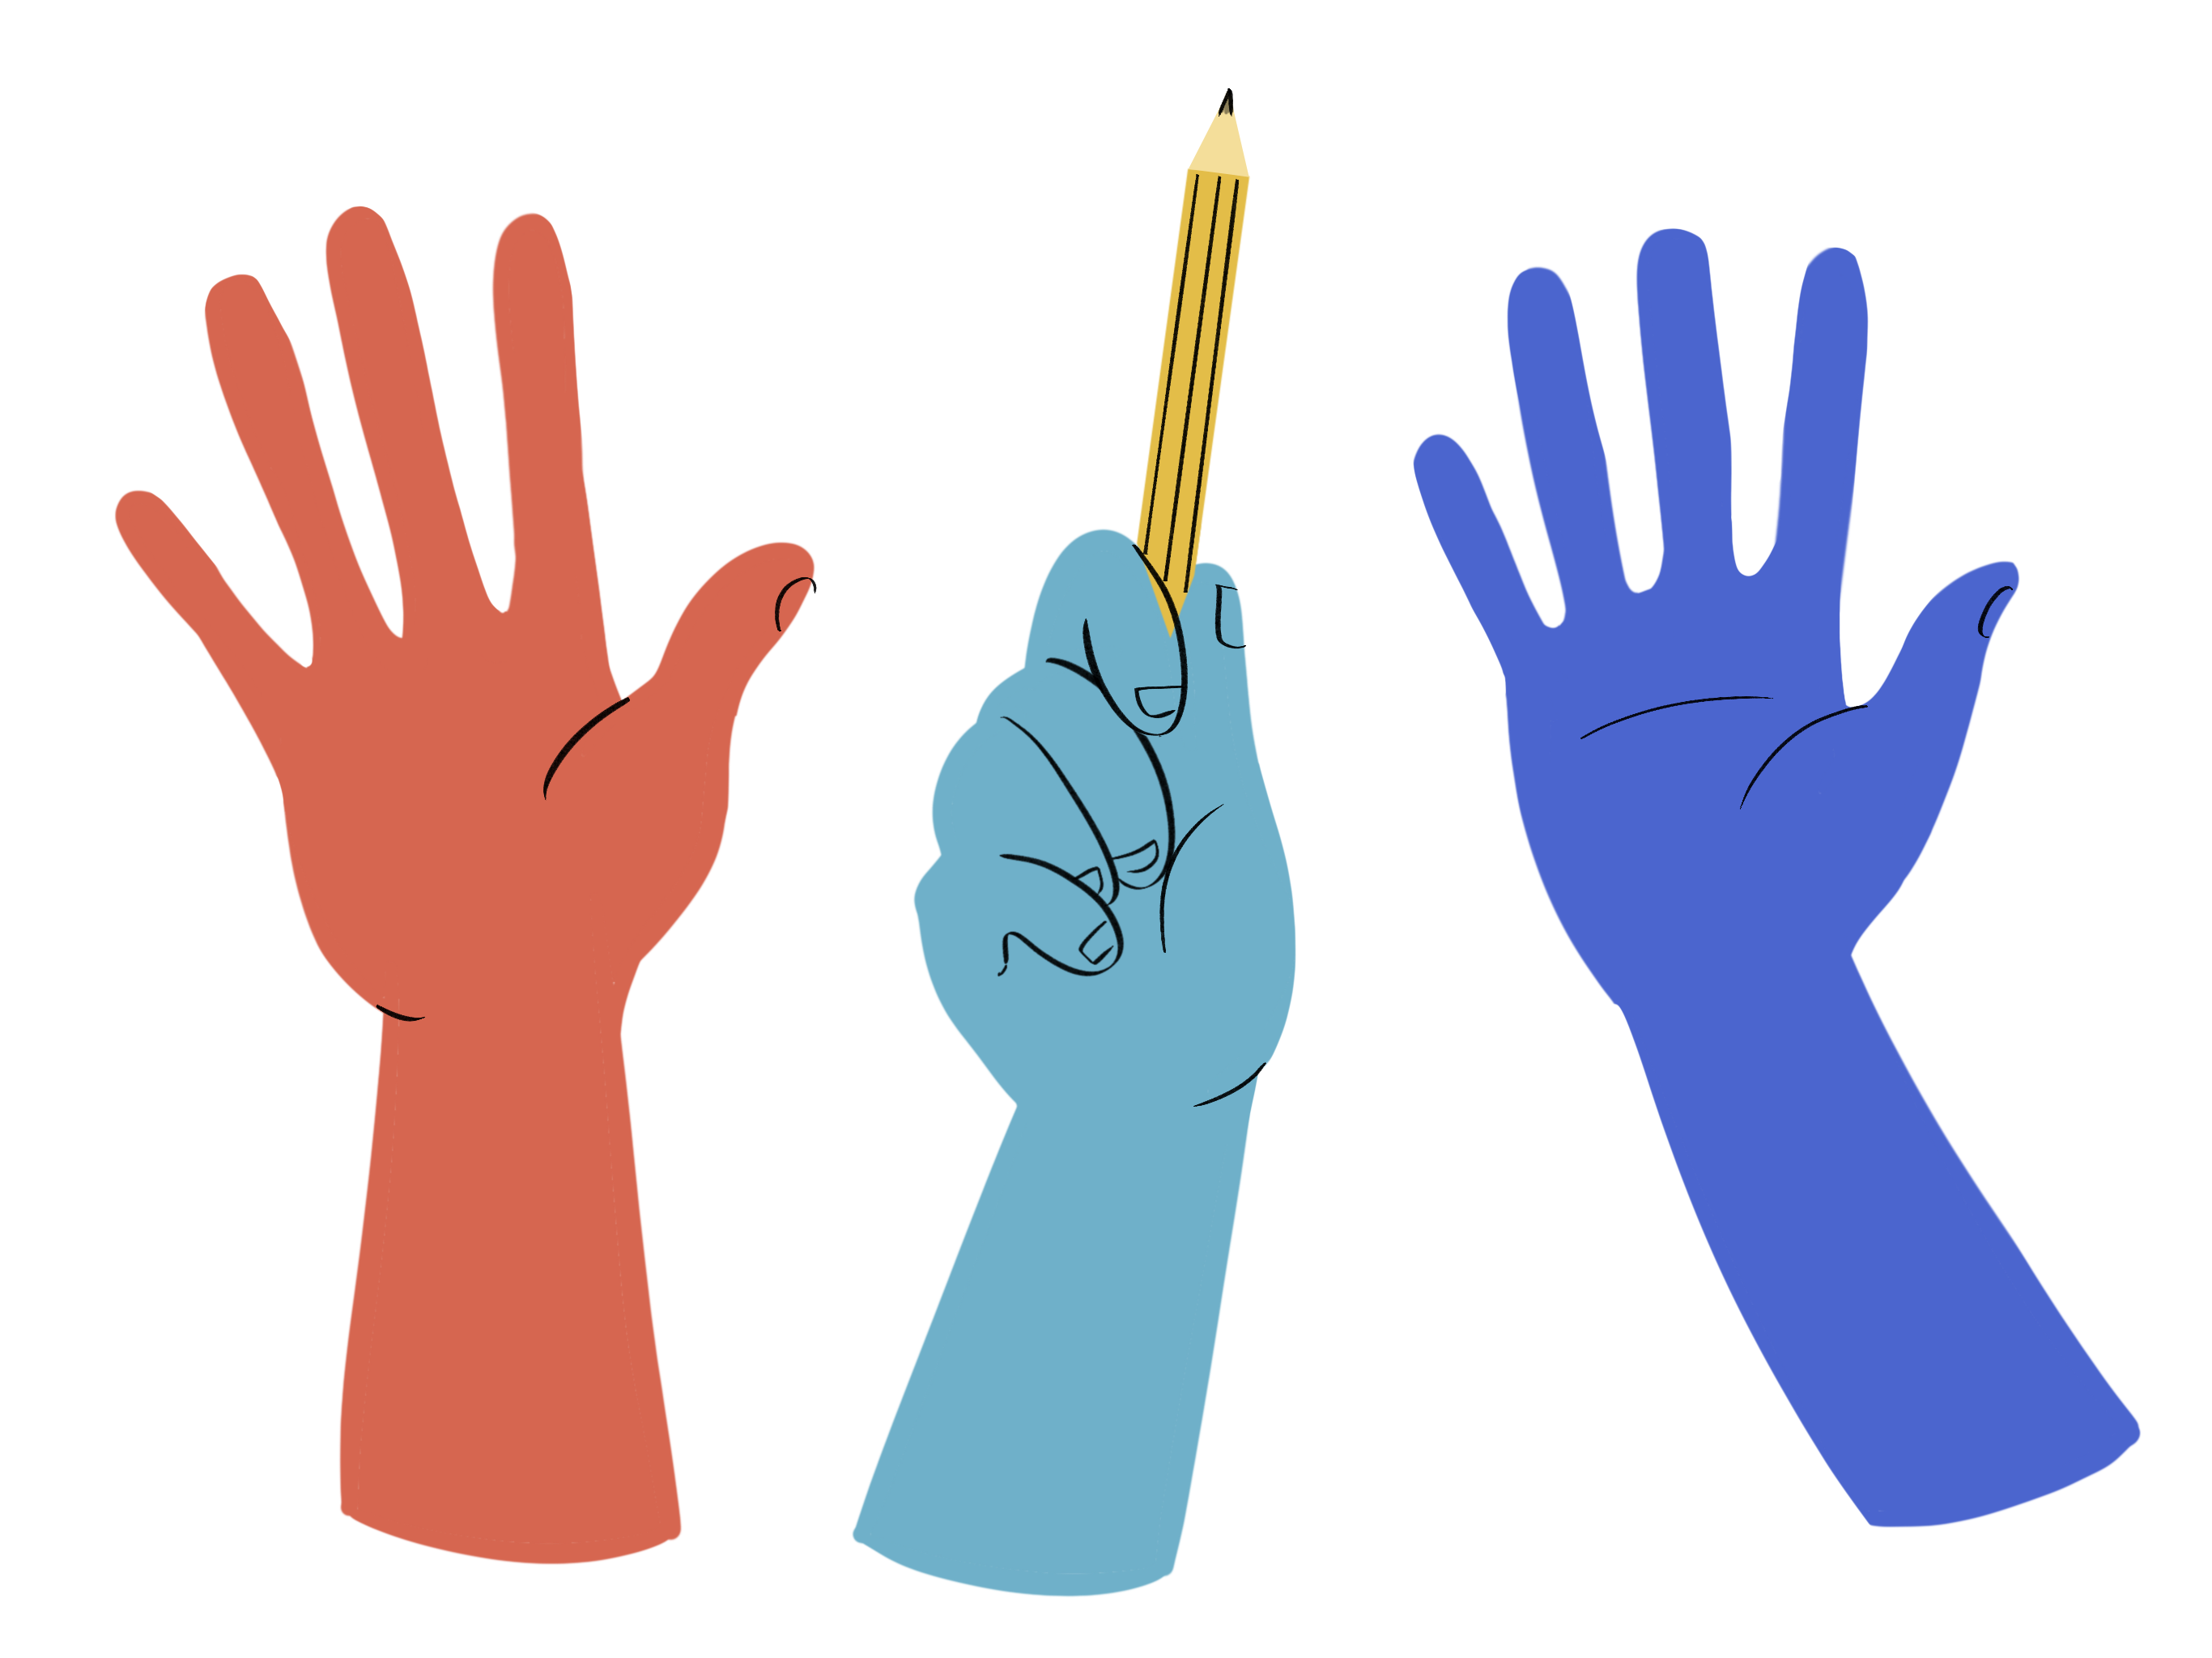 hands showing community participation